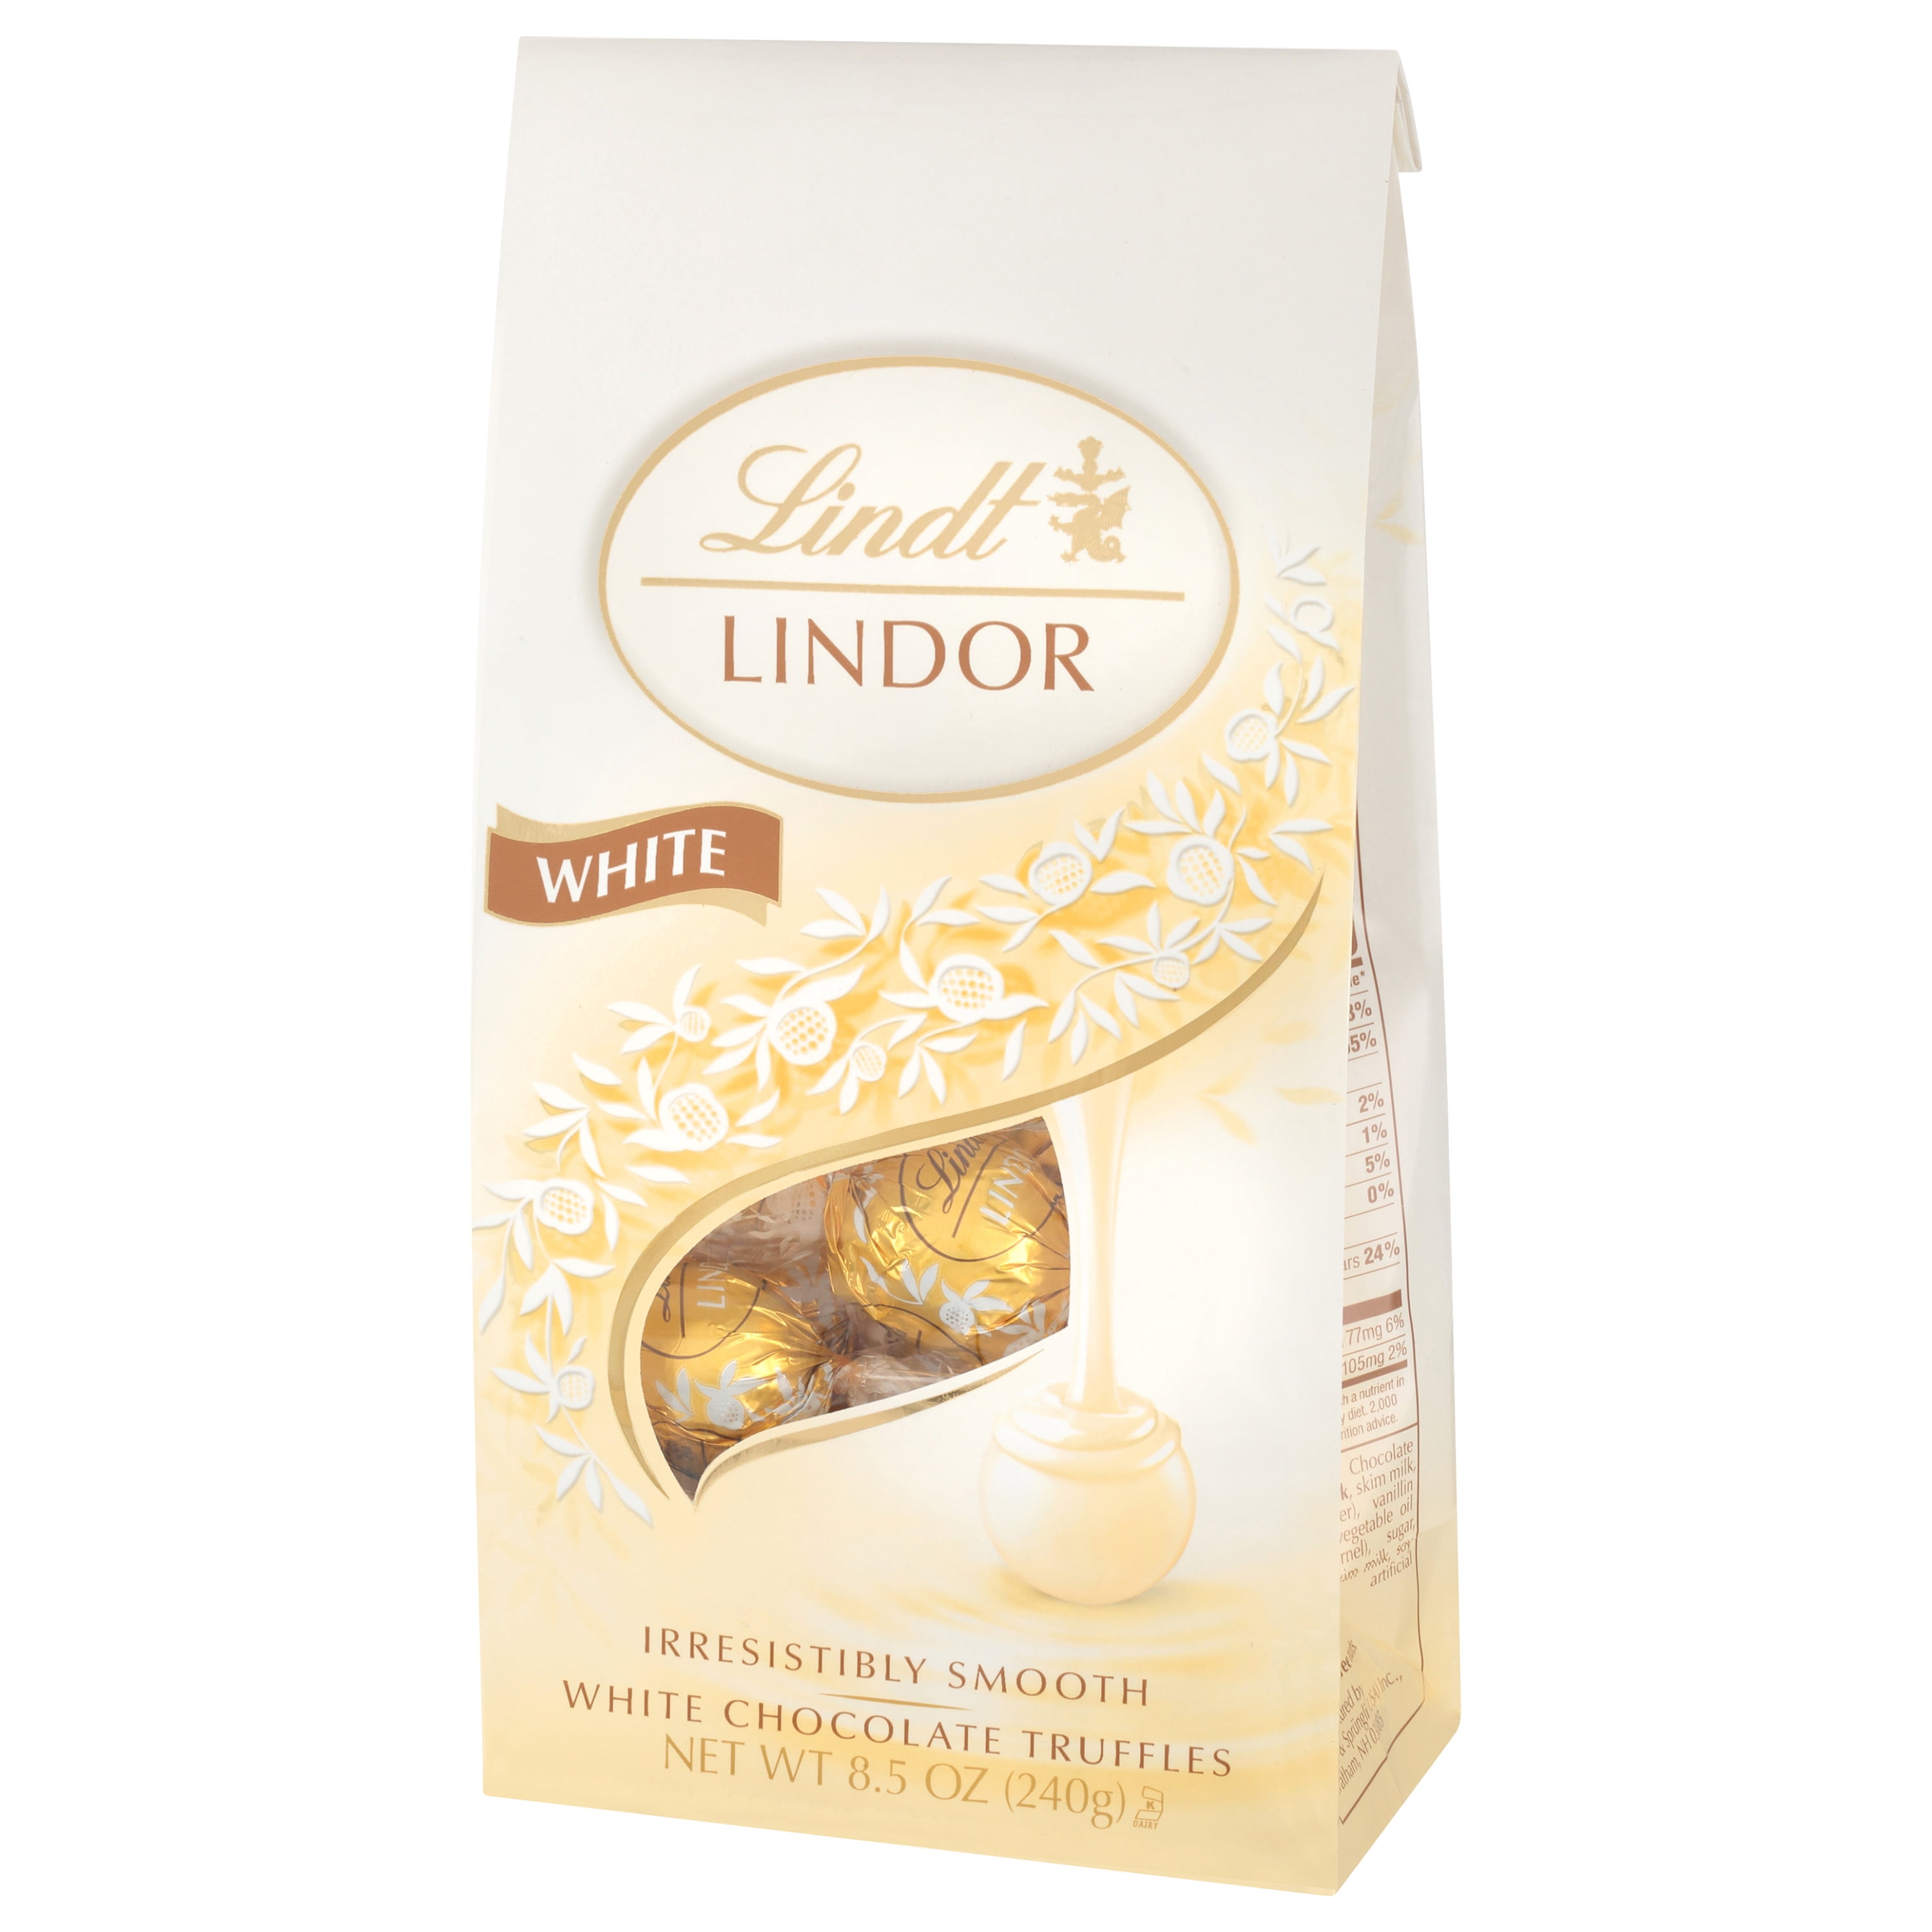 Lindt Lindor White Chocolate Truffles - 8.5 oz bag